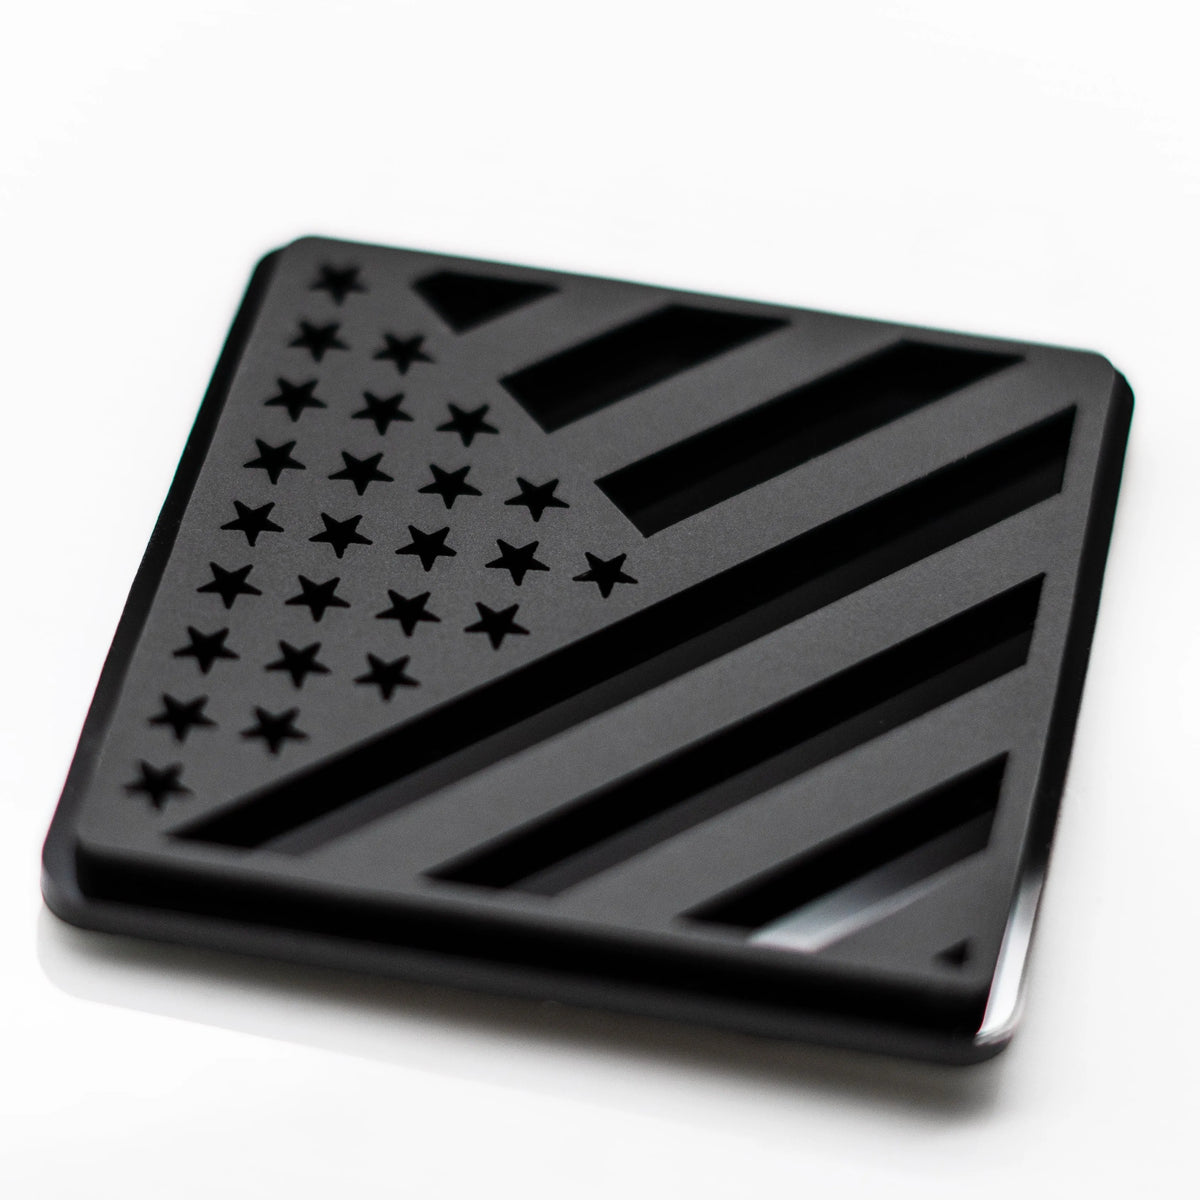 Fender Badge Pair - American Flag - Fits 2021+ Bronco® Outer Banks® - Matte Black on Black